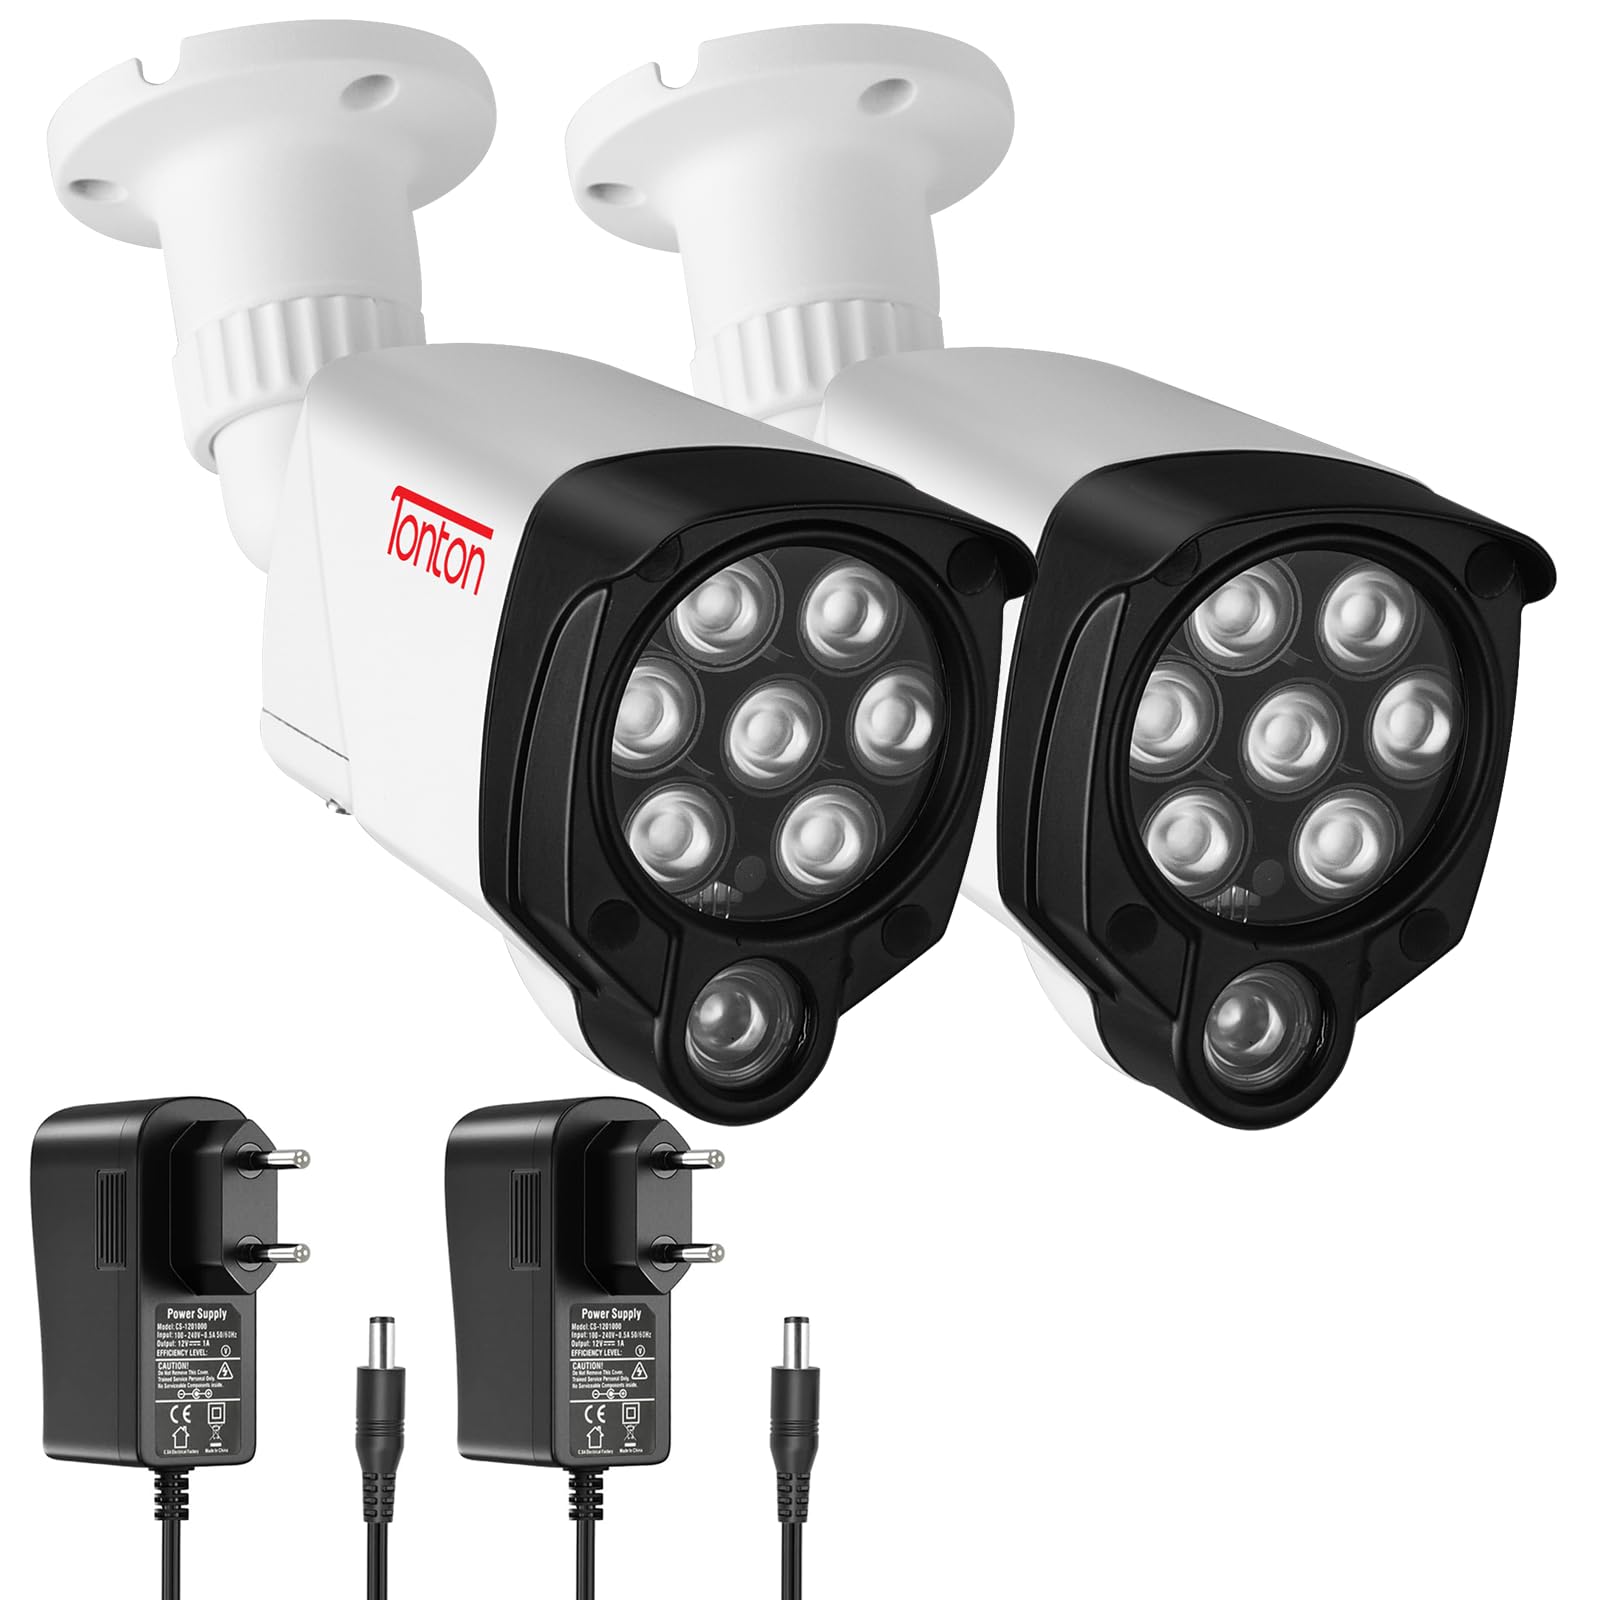 TONTON IR Infrarot-Nachtsicht Kamera 30M (100ft) für CCTV Überwachungskamera/Quest3/Quest2/Quest/VR2 Playstation(PSVR2)/ PS5 VR2. 3M DC Netzteil für Innen-und Außenbereich, Auto Ein/Aus, 2Pack, Weiß